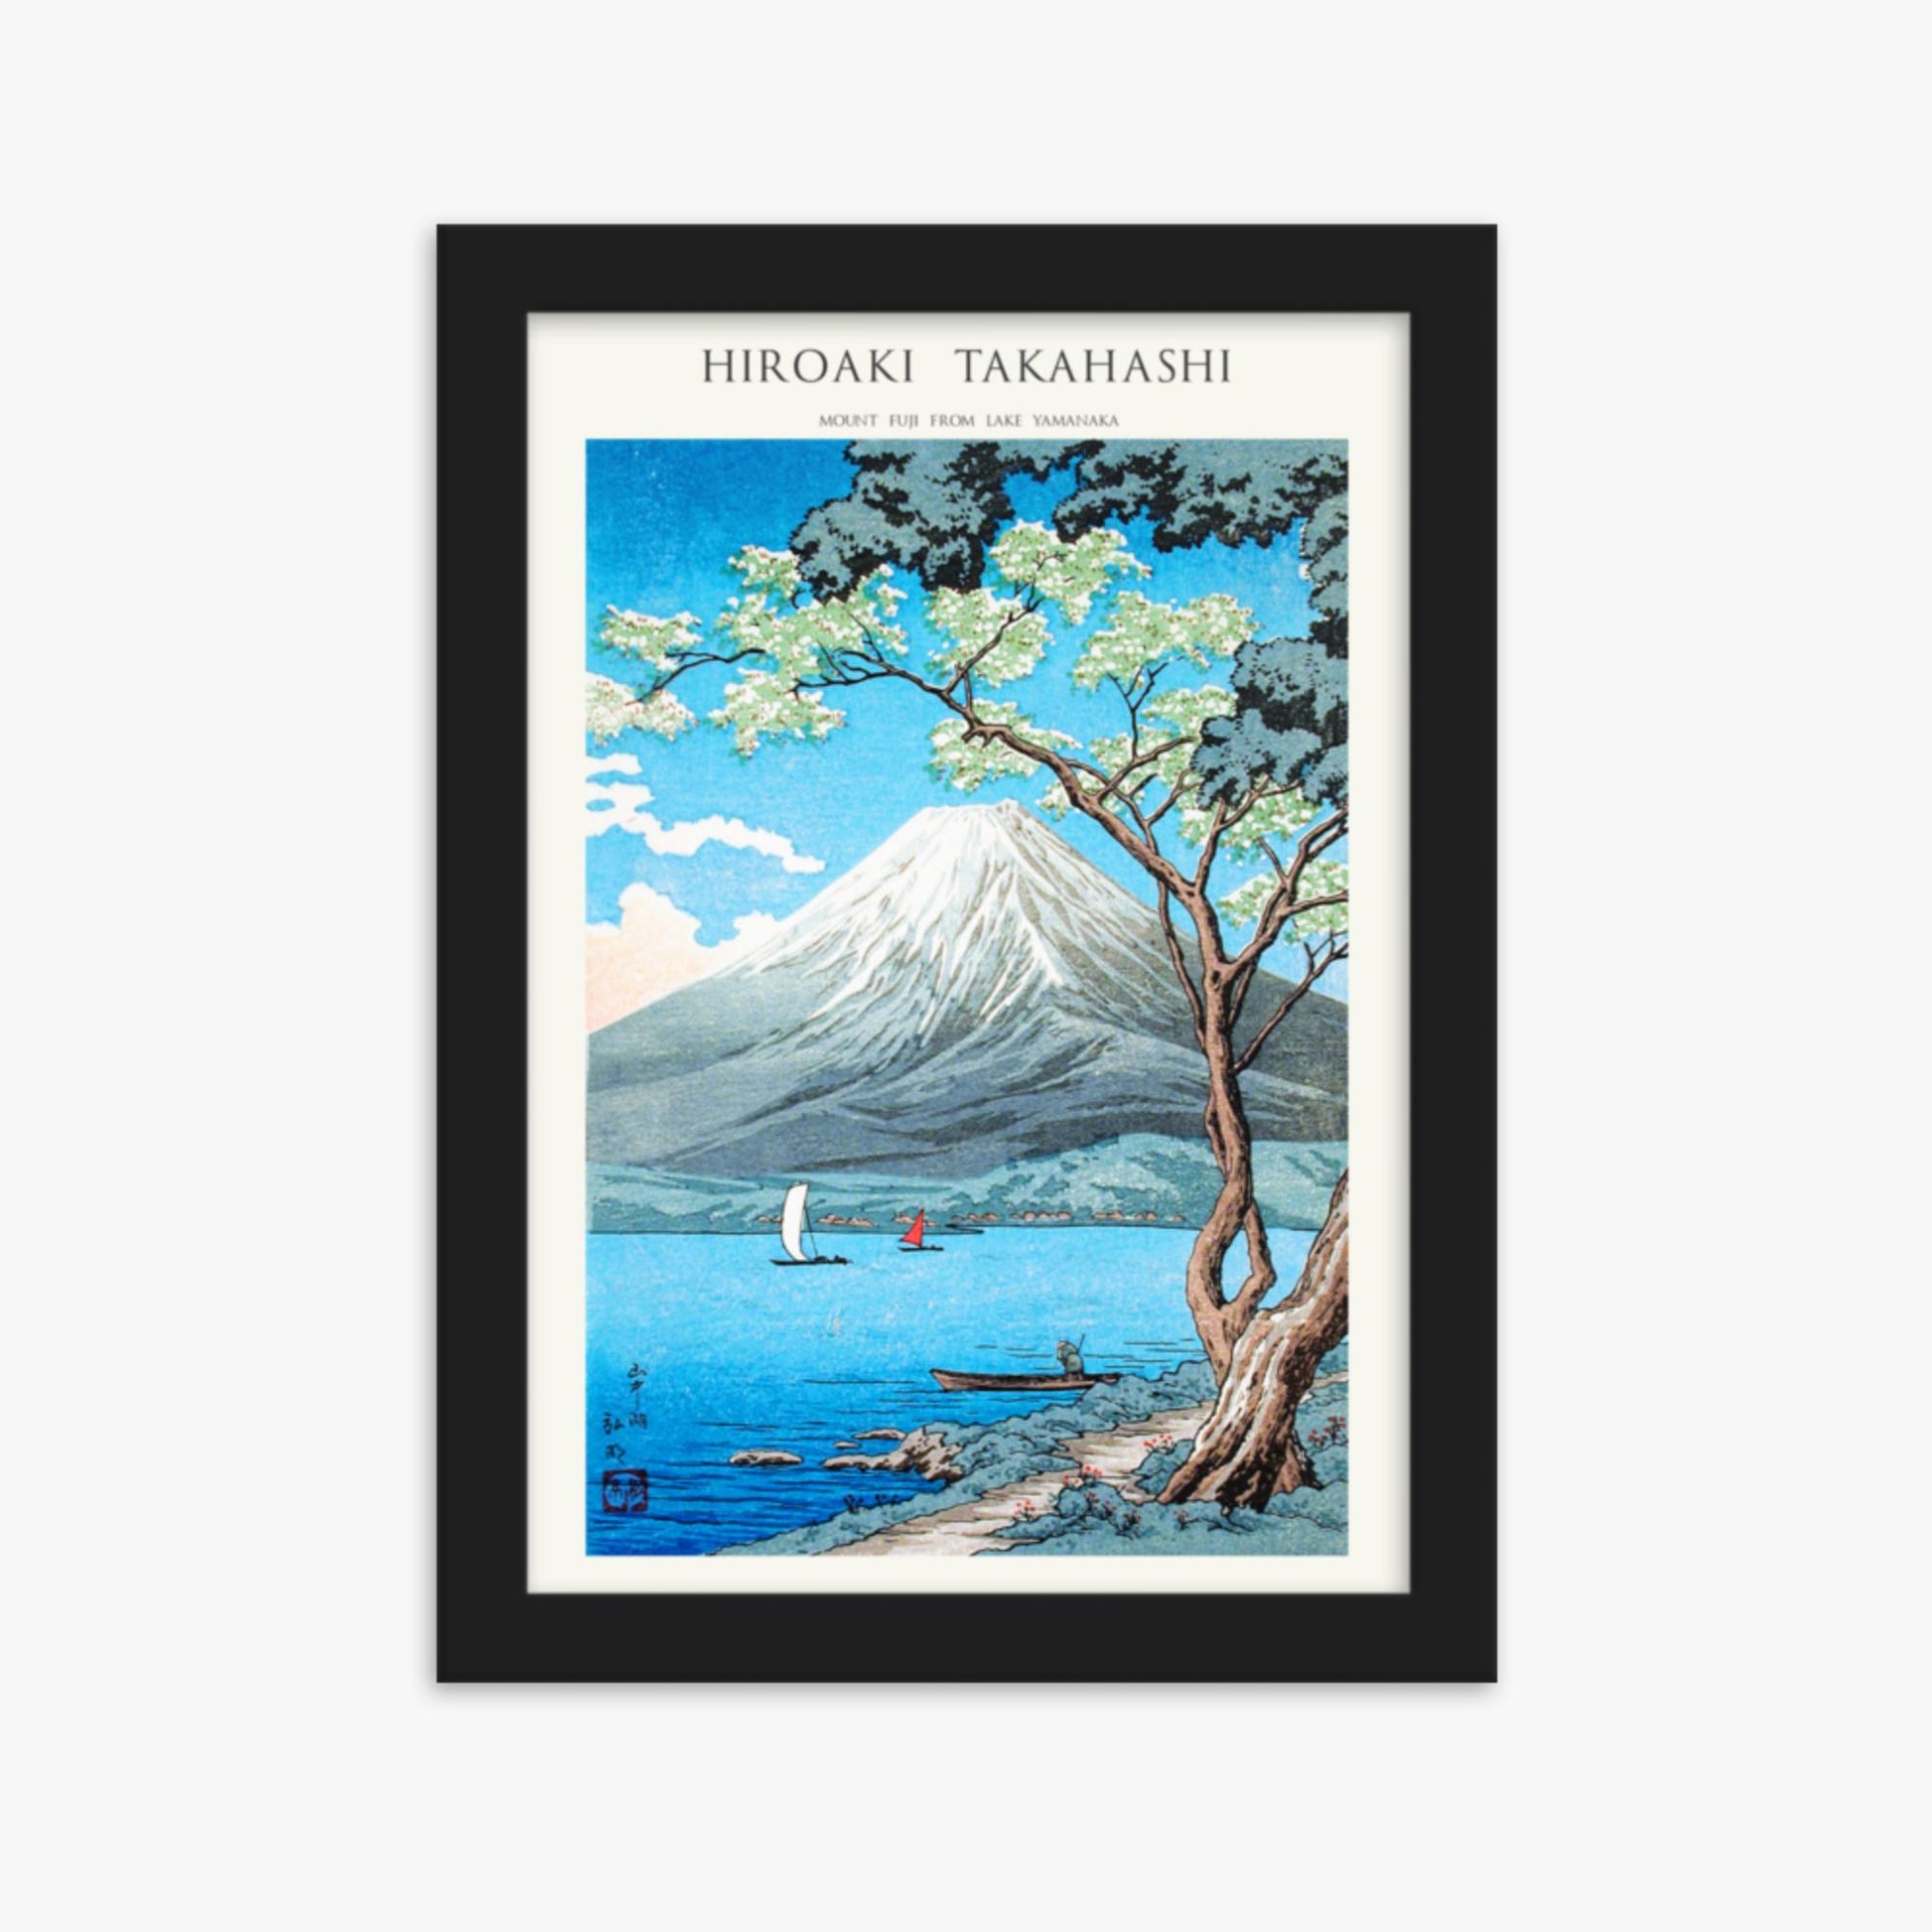 Hiroaki Takahashi - Mount Fuji from Lake Yamanaka - Decoration 21x30 cm Poster With Black Frame